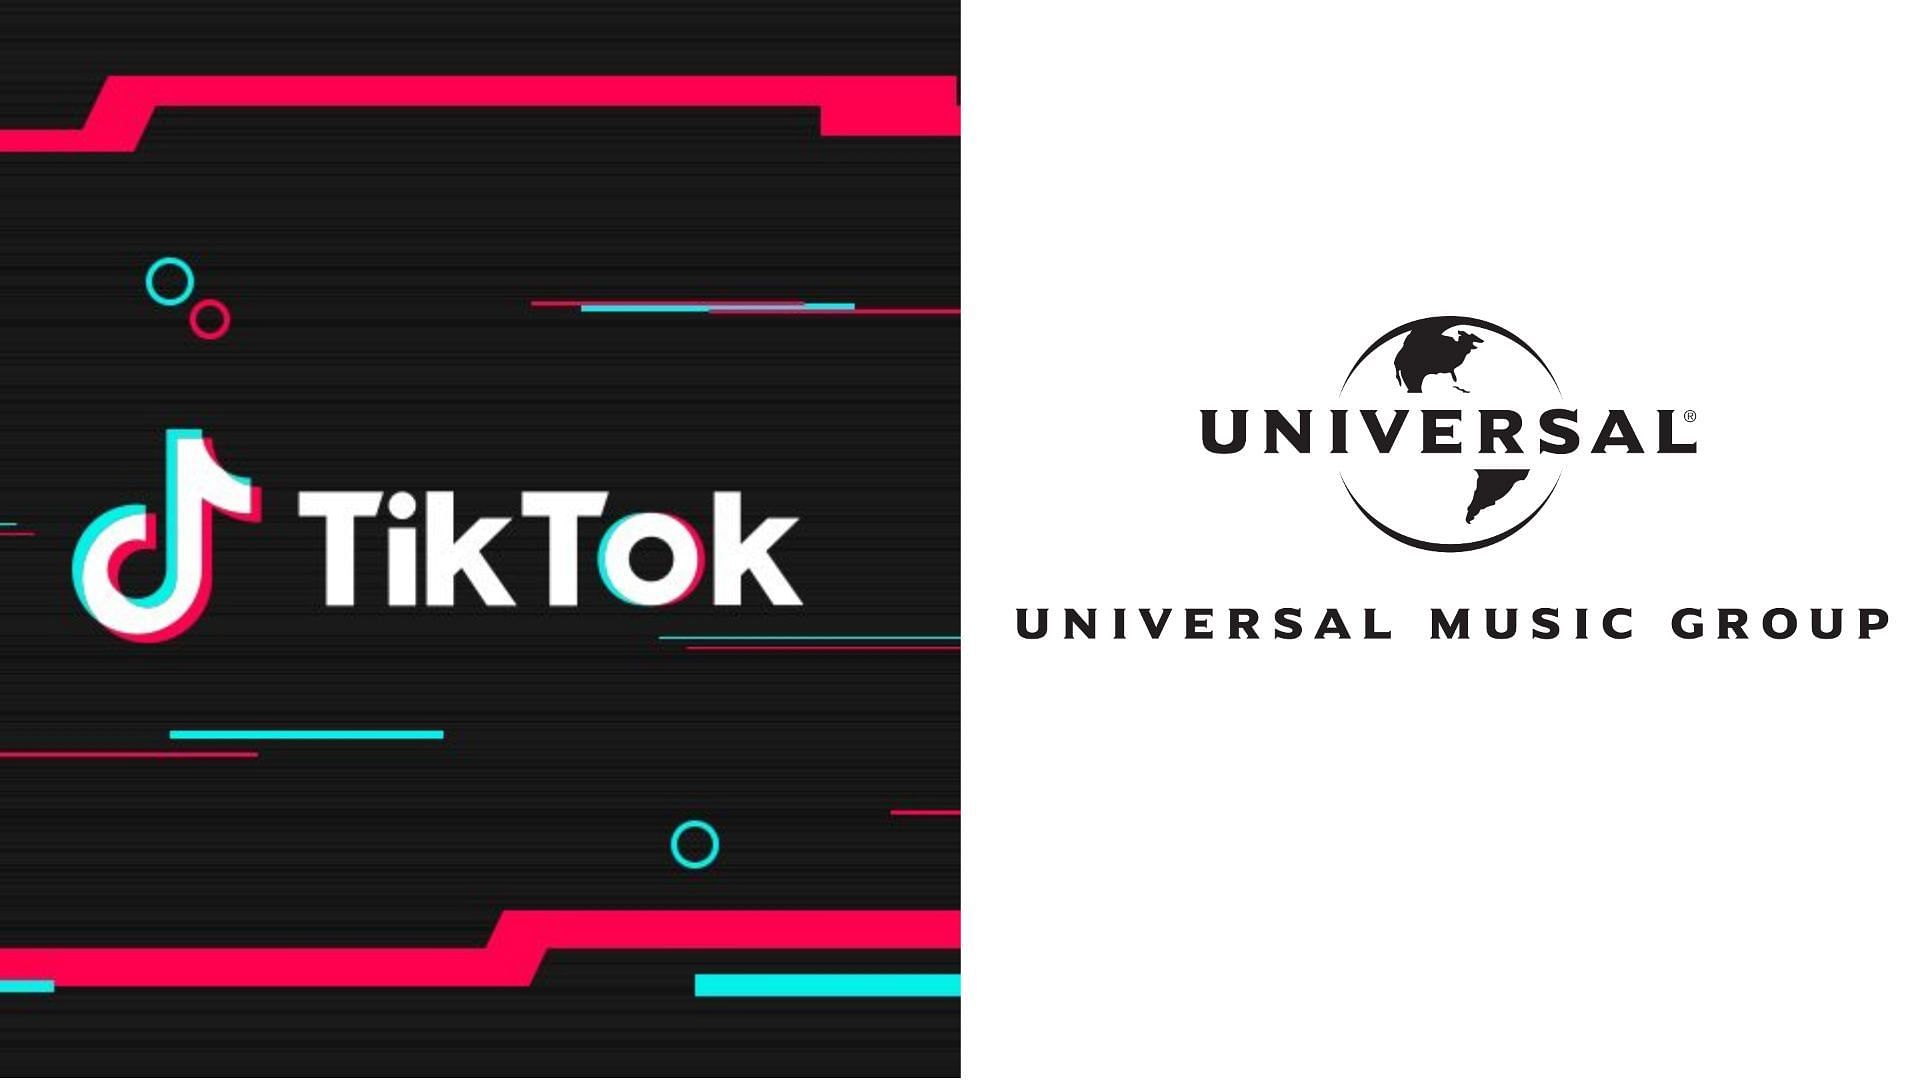 TikTok refuted Universal&#039;s claims (Image via Facebook/TikTok/Universal Music Group)